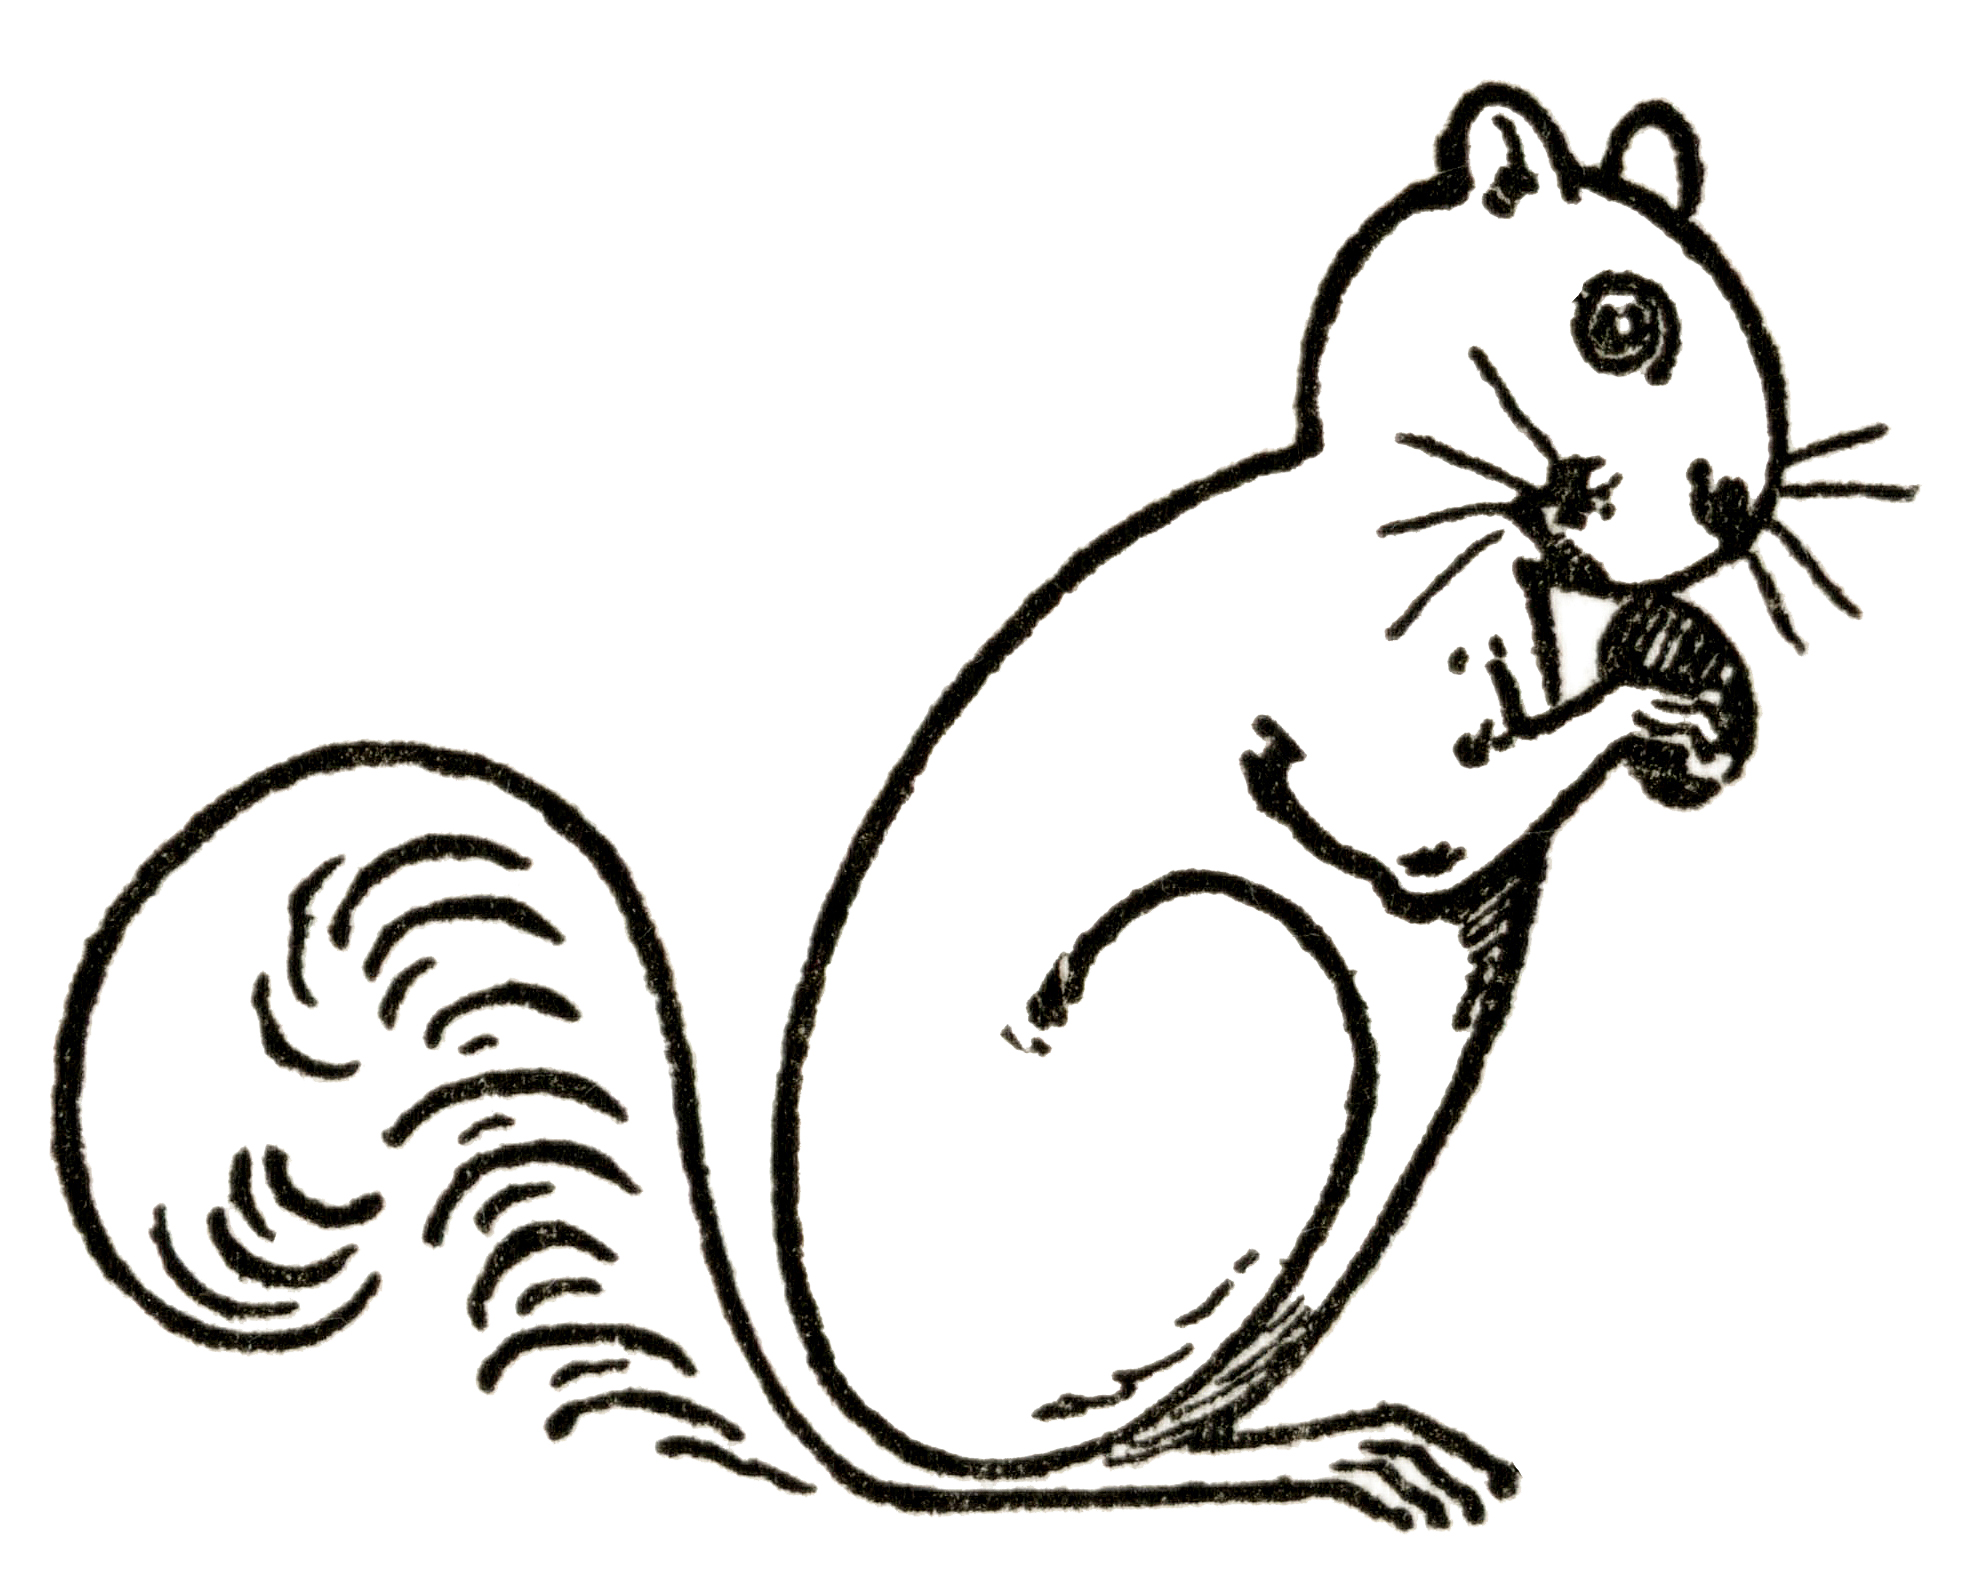 Draw a Squirrel